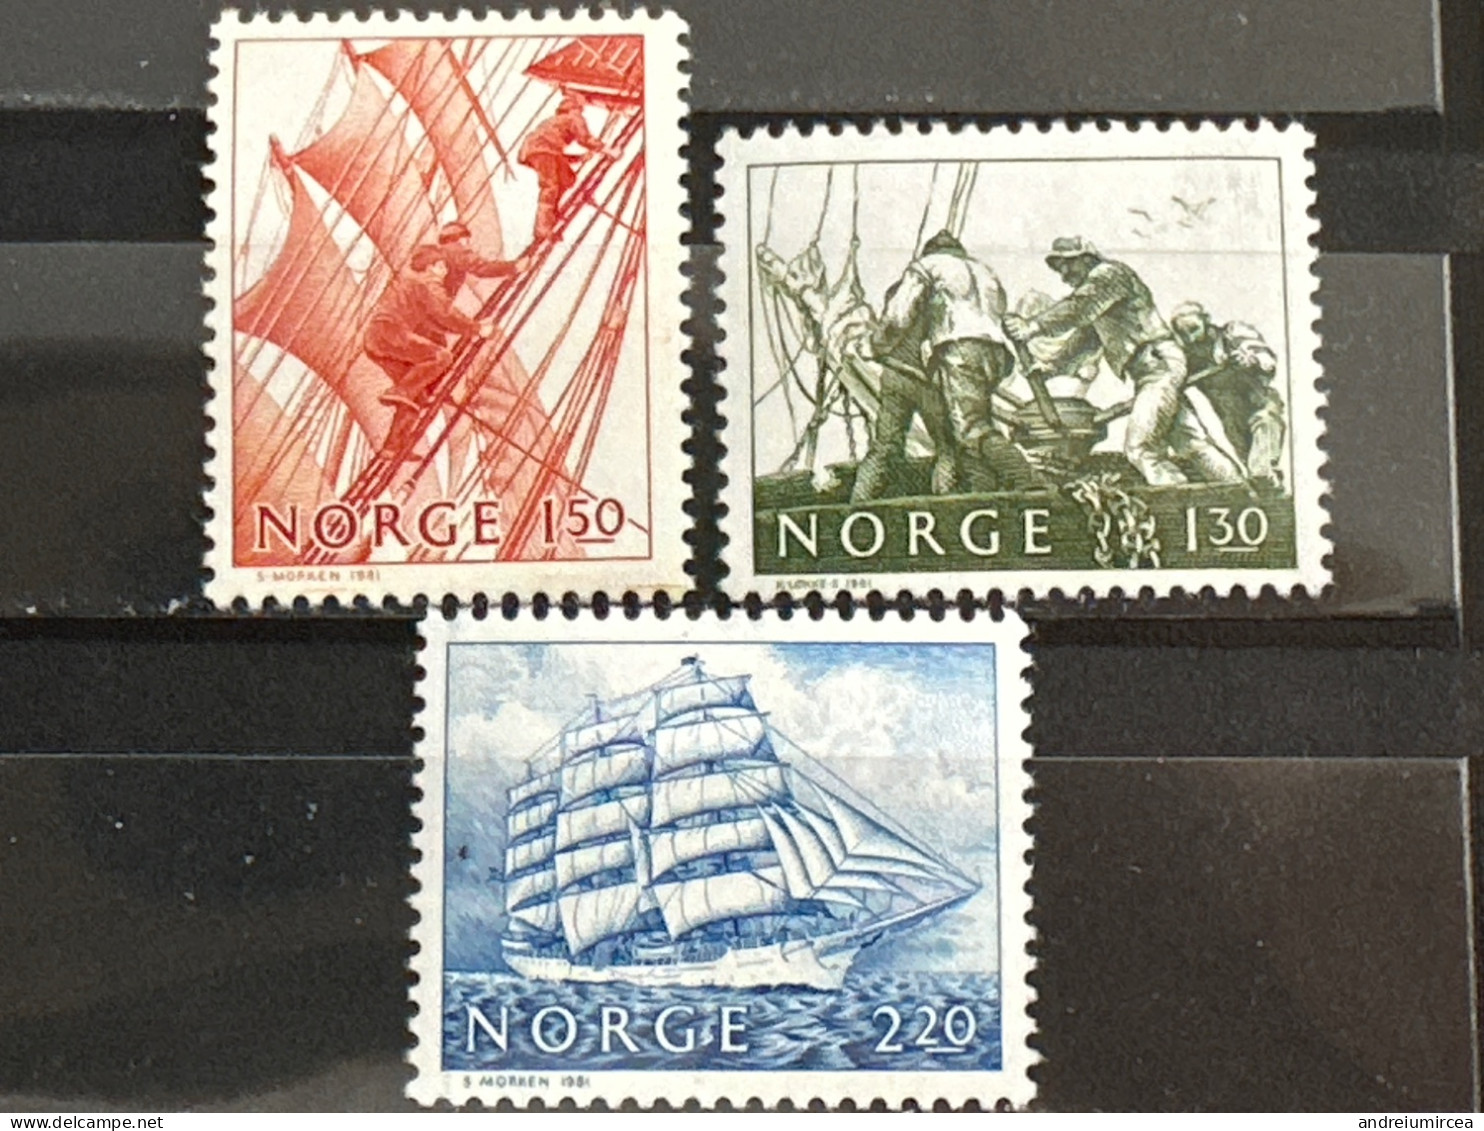 Norvege MNH 1981 - Unused Stamps